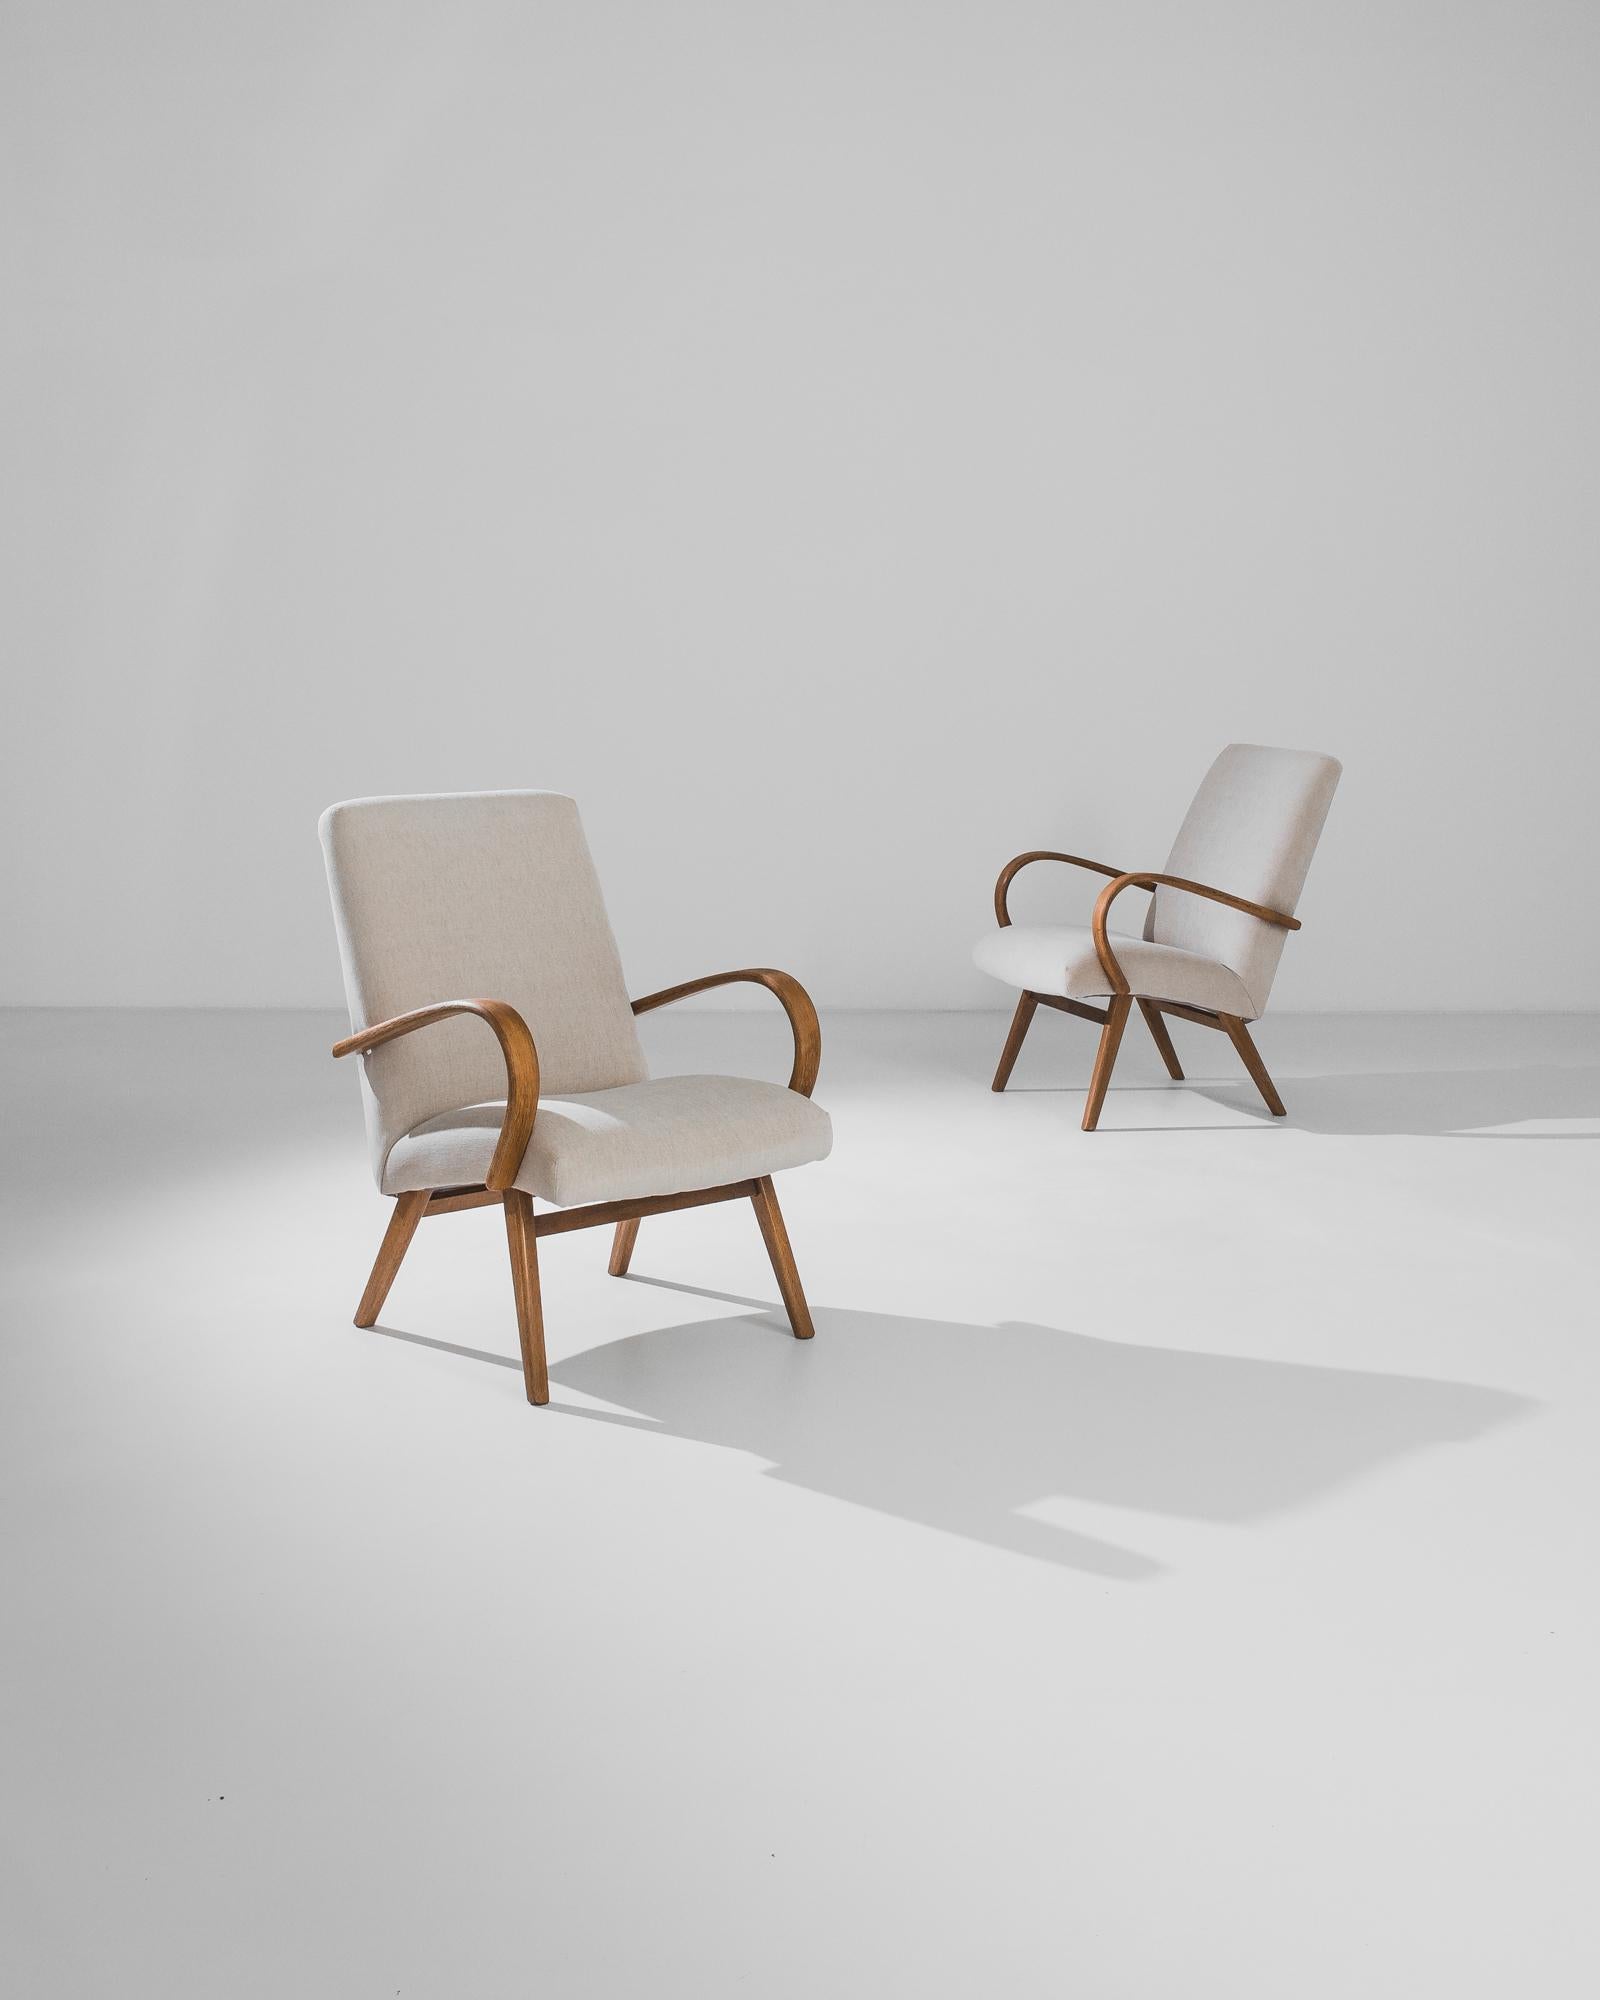 Fabriquée dans l'ancienne Tchécoslovaquie par le designer de meubles J. Halabala, cette paire de fauteuils en bois courbé des années 1950 a été retapissée dans un tissu neutre actualisé. La courbe audacieuse des accoudoirs et l'angle des pieds